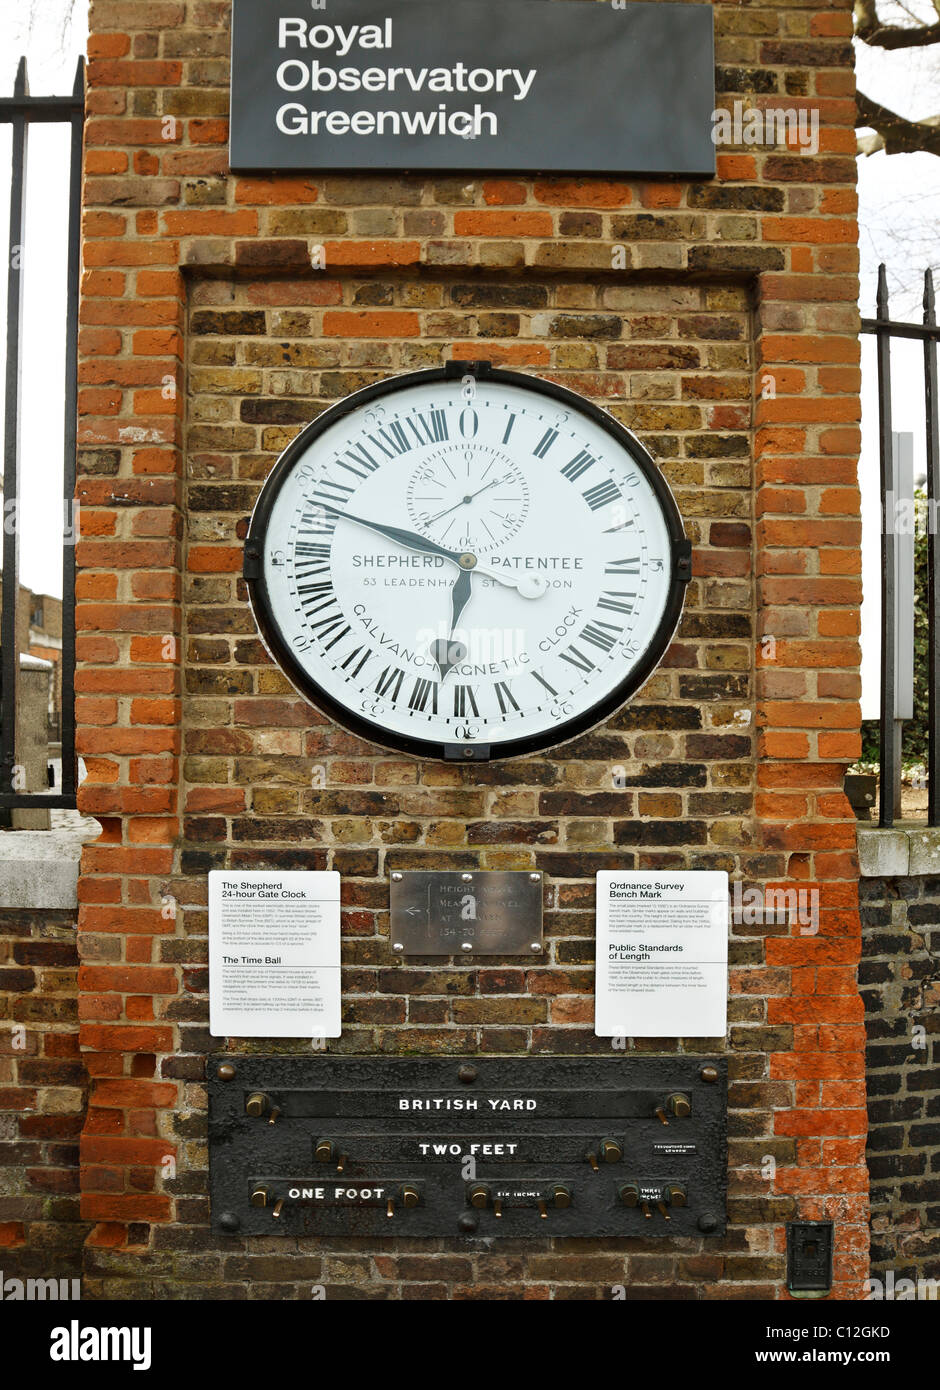 Osservatorio Reale di Greenwich. Visualizzazione del Pastore Gate 24hr orologio, misure pubbliche di lunghezza e Ordnance Survey bench mark. Foto Stock